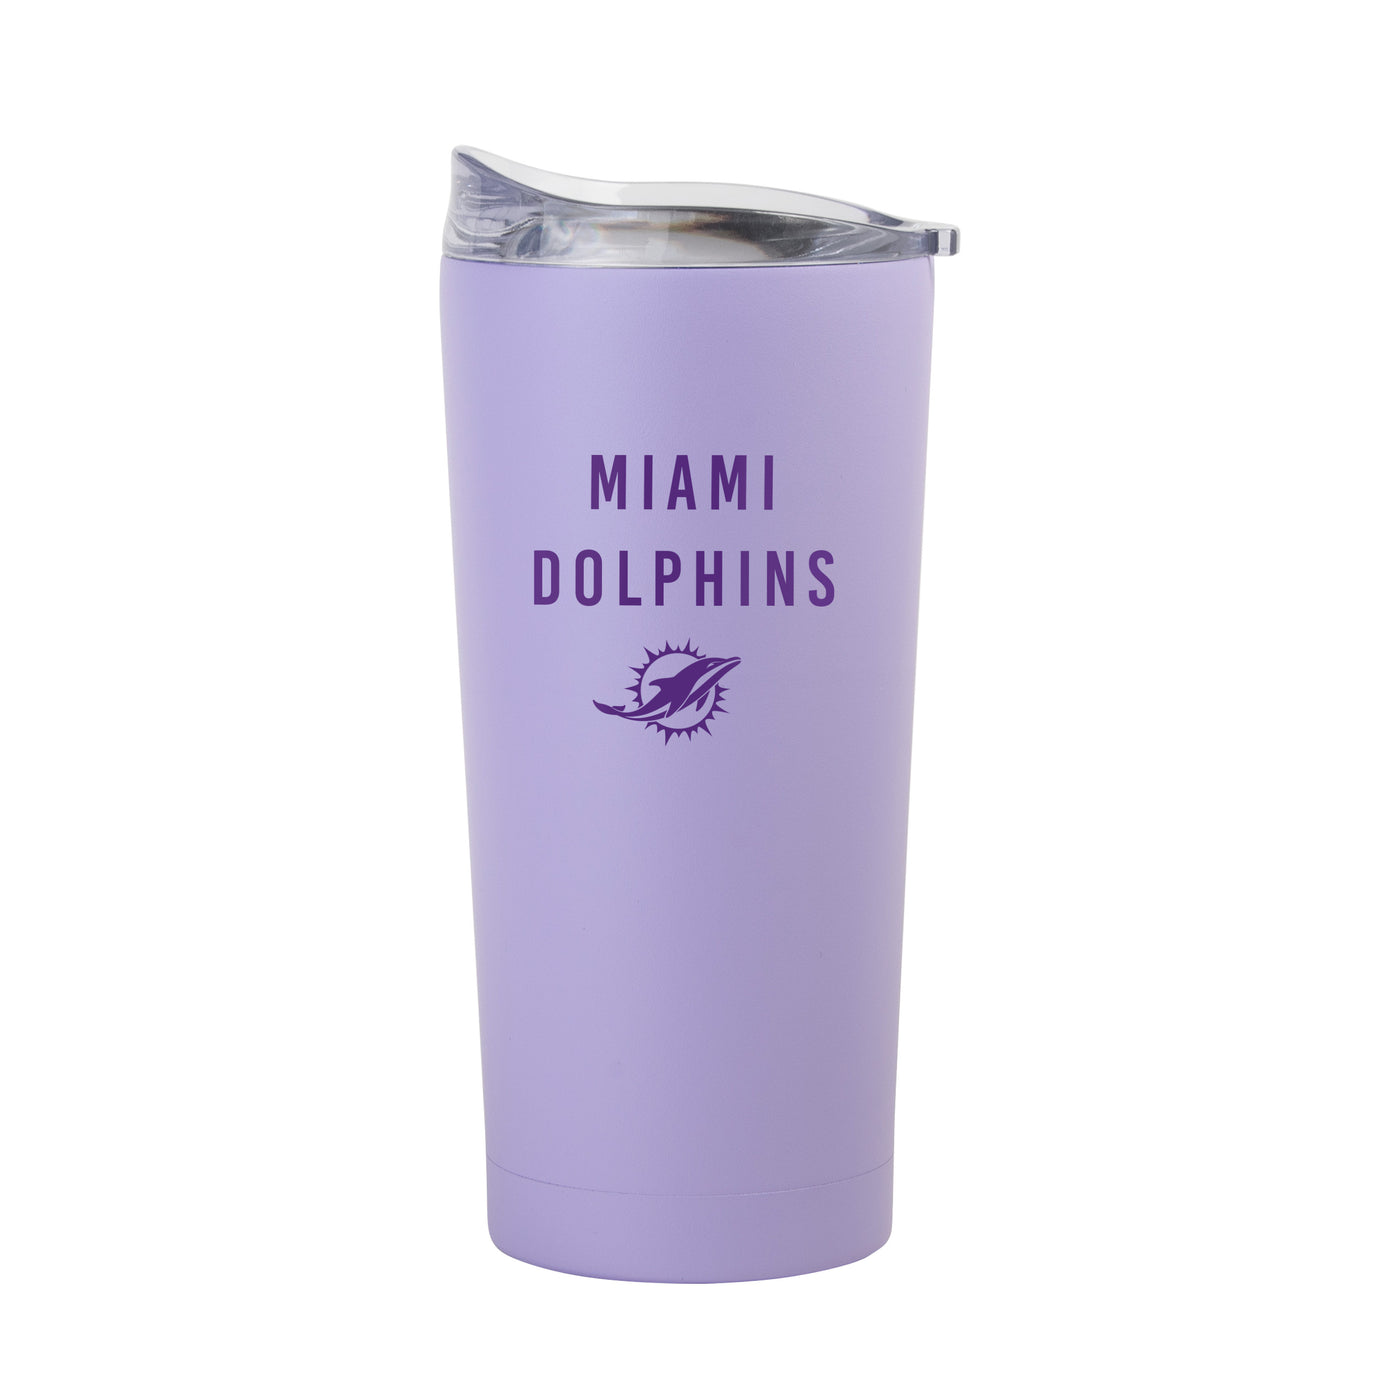 Miami Dolphins 20oz Tonal Lavender Powder Coat Tumbler